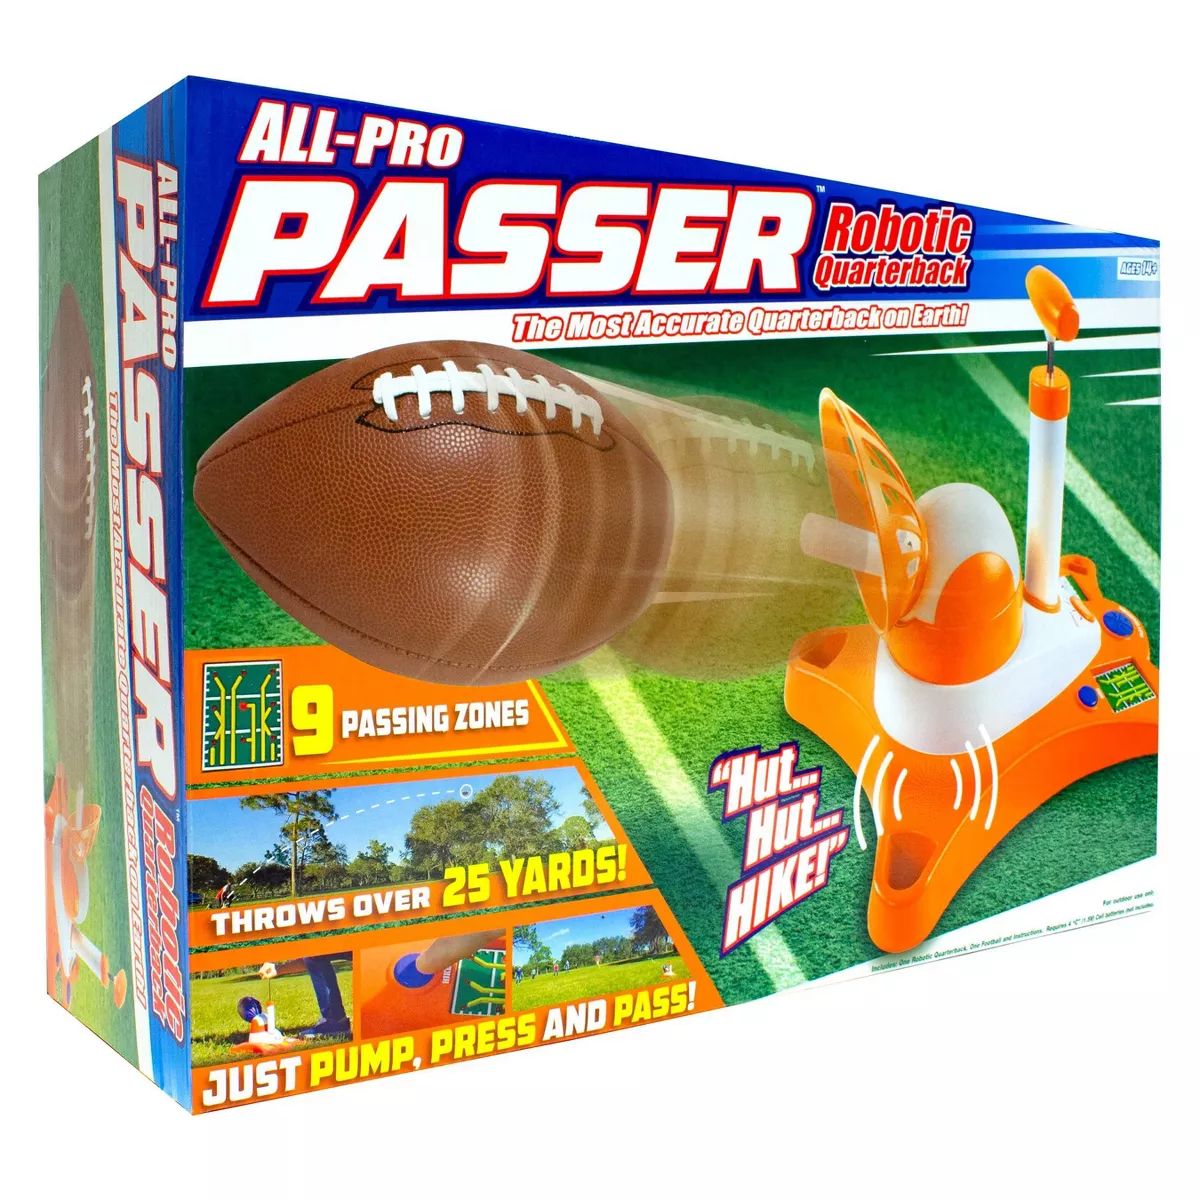 All Pro Passer Robotic Quarterback | Target